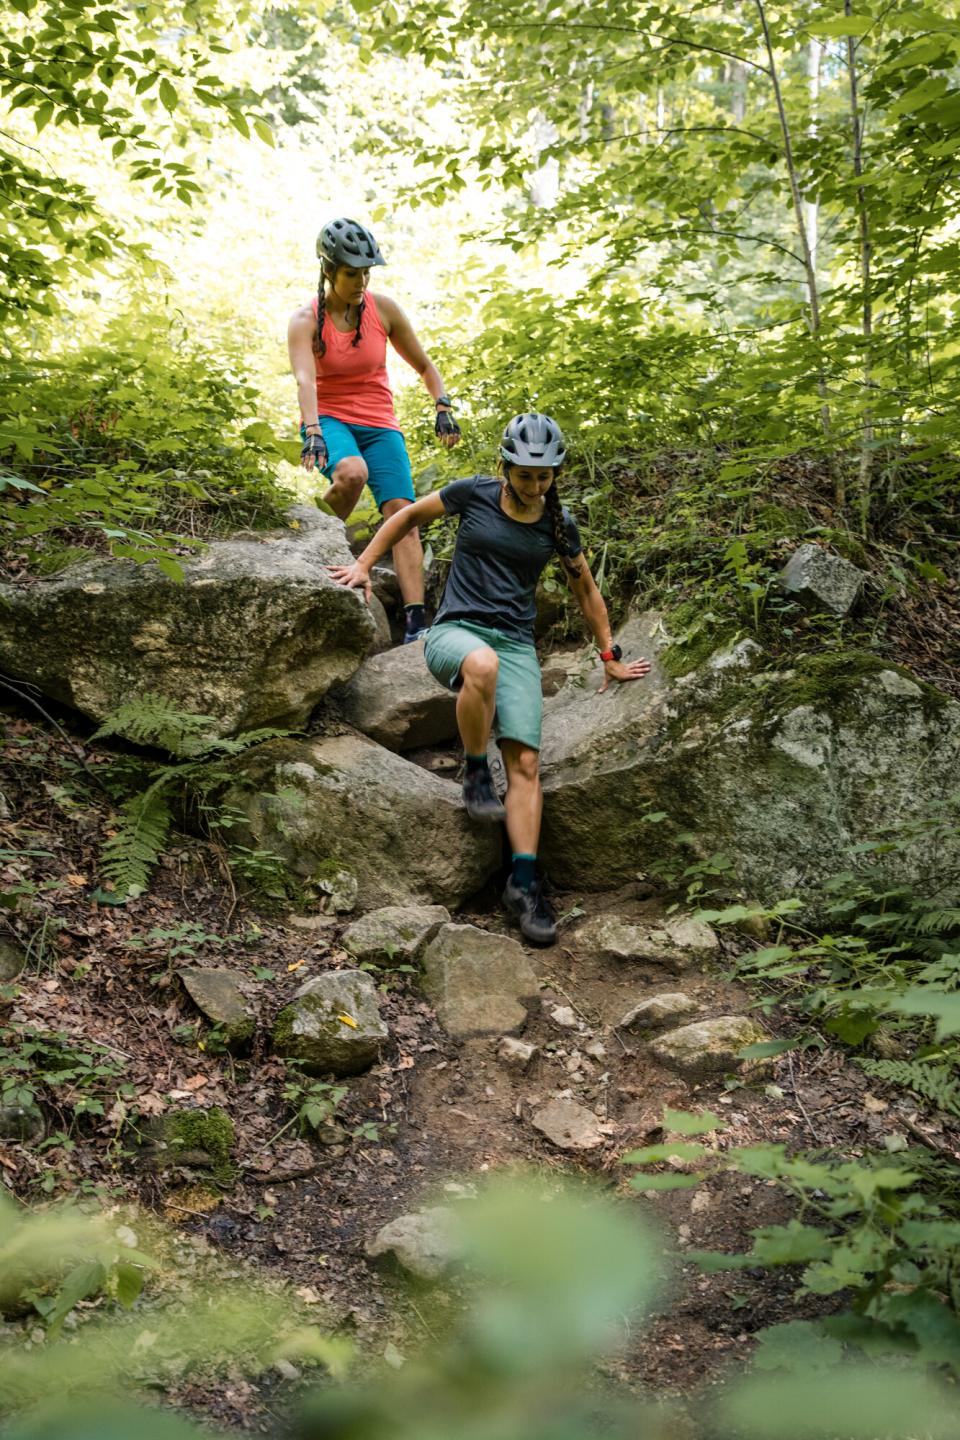 Two women in mountain bike gear clamber down a rocky trail.